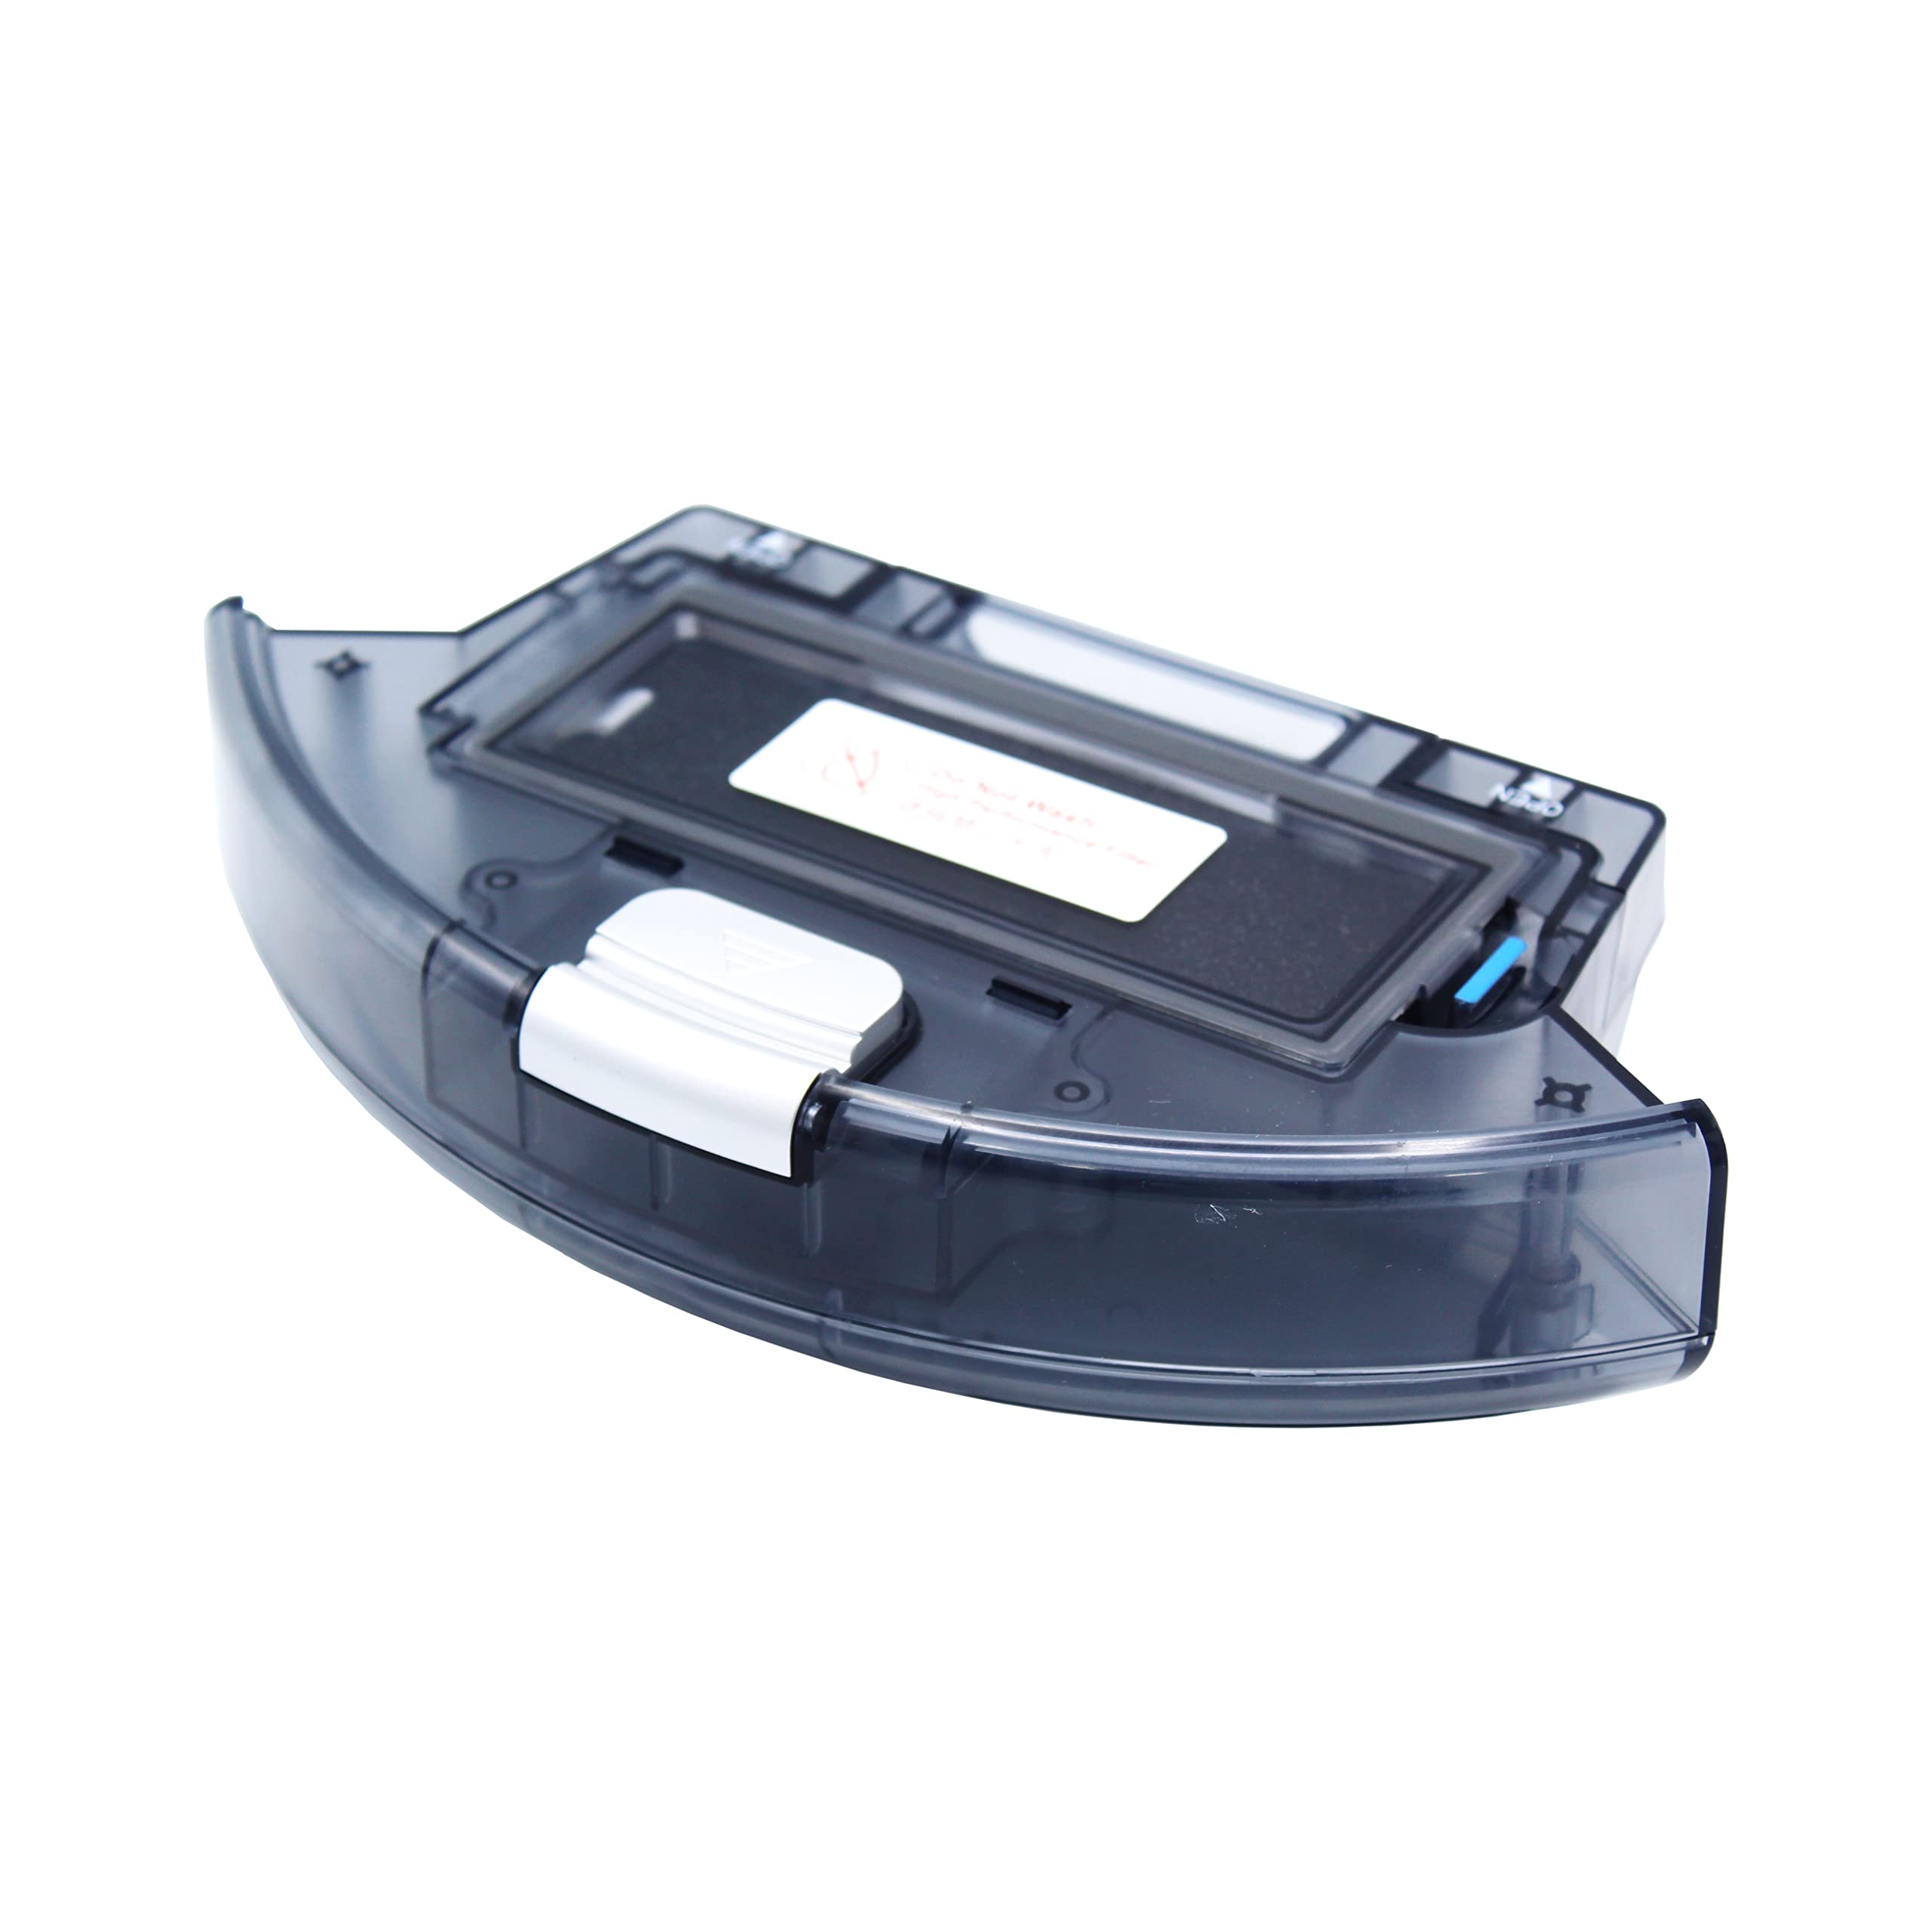 Robotic Vacuum Cleaner iLife X620 Dust Box 